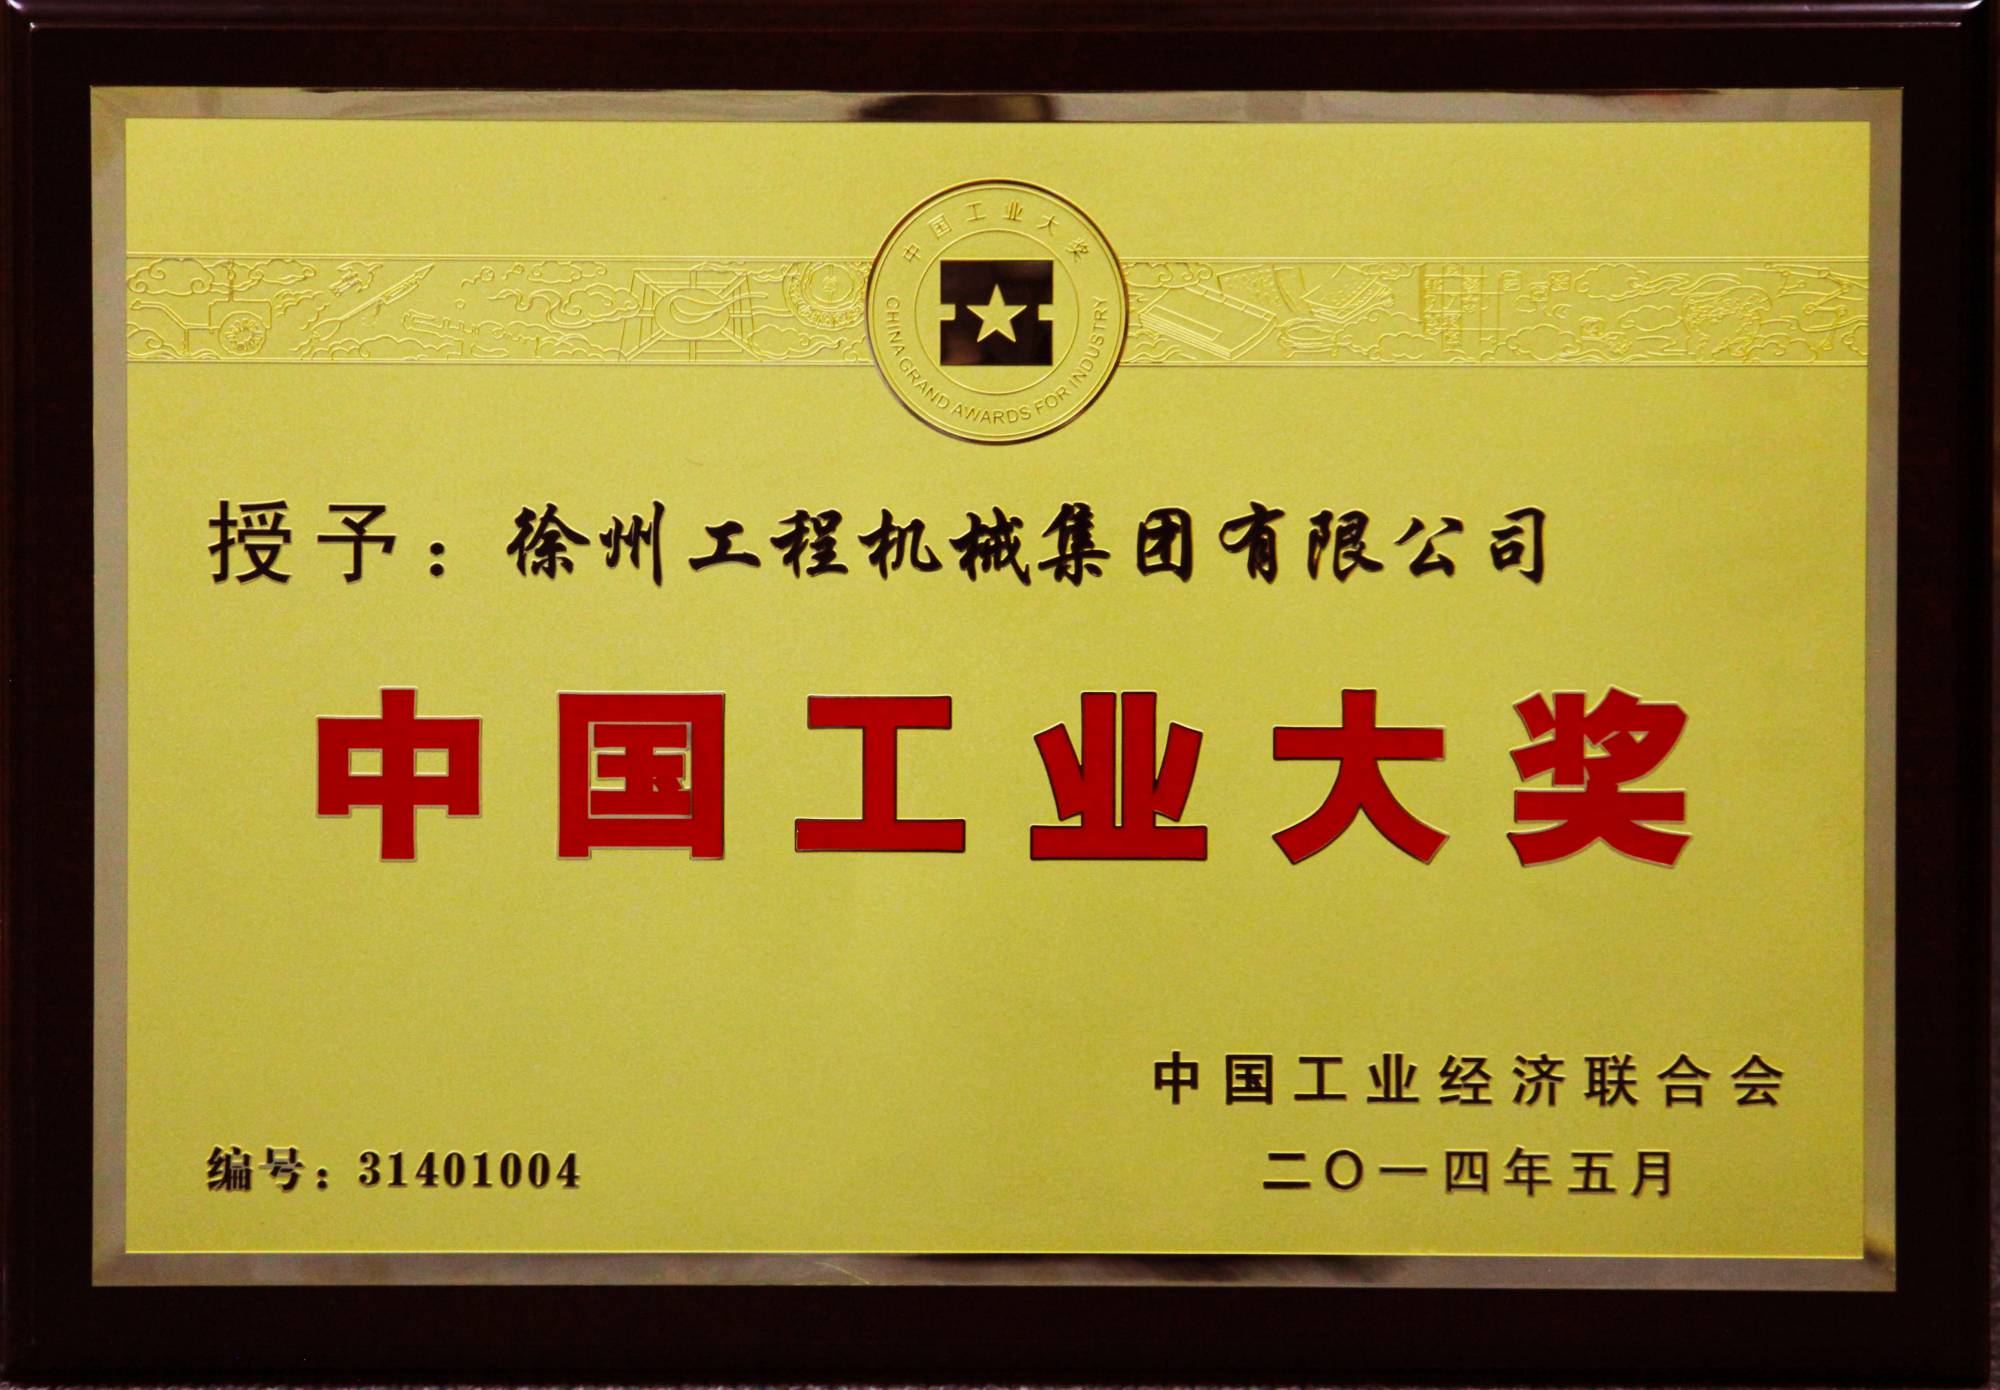 w66利来荣膺行业唯一的中国工业领域最高奖项——中国工业大奖